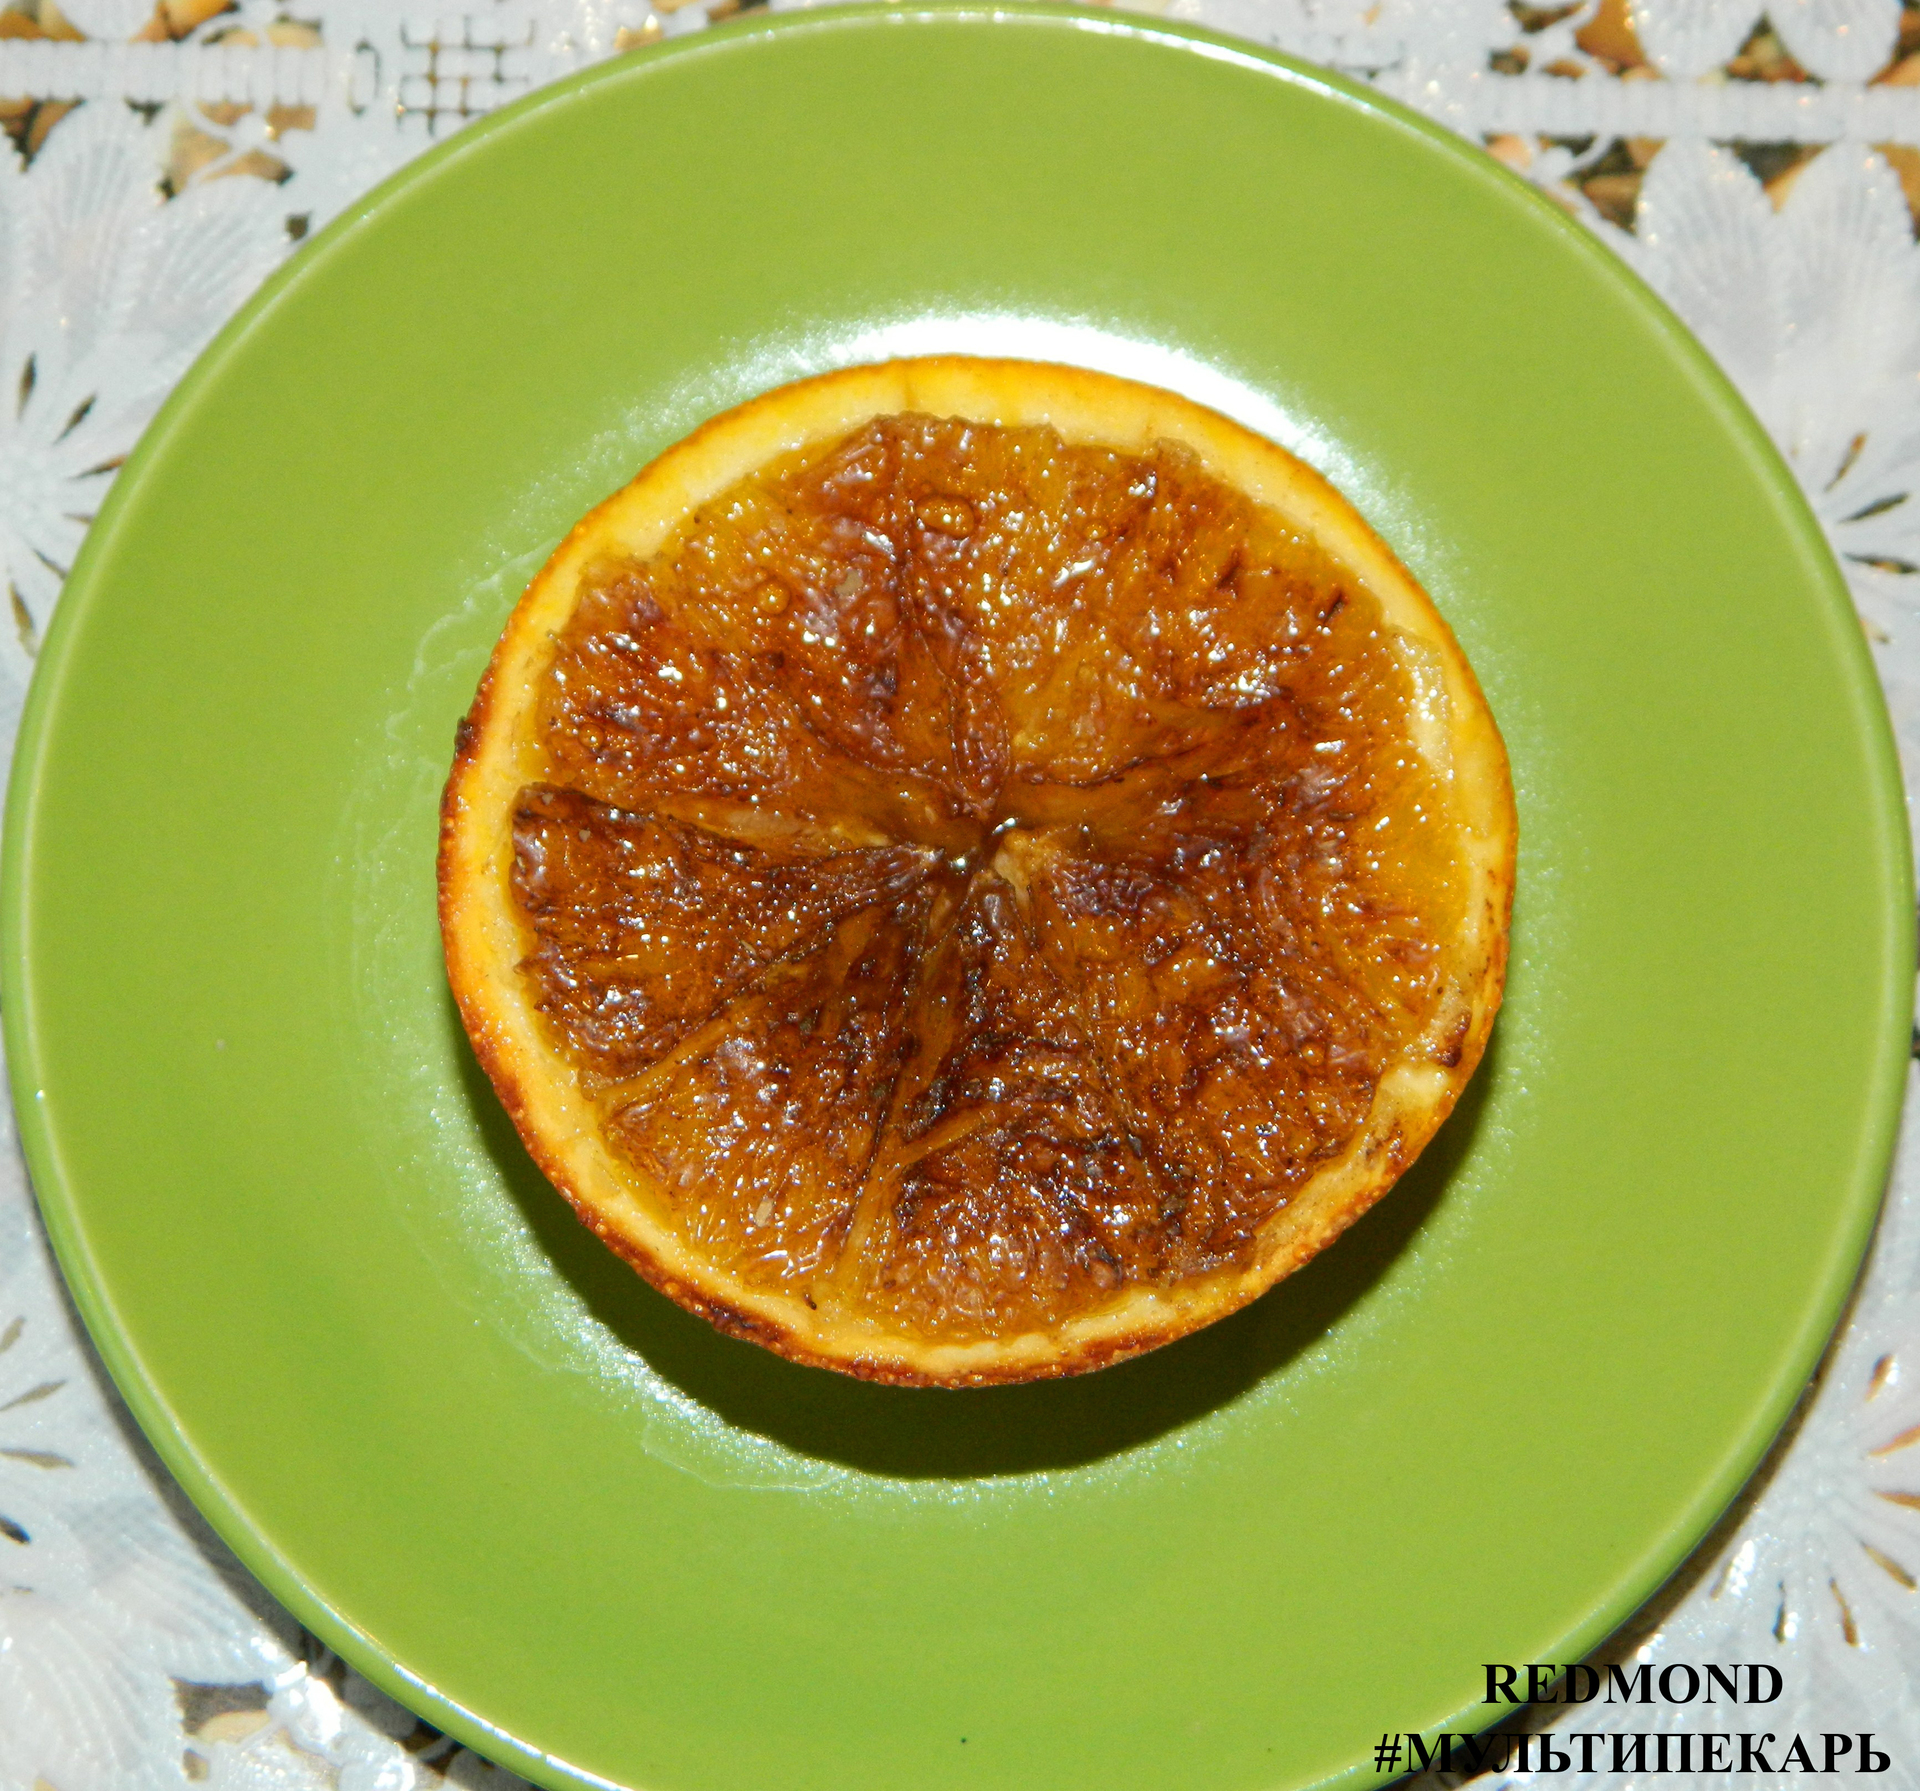 Фото к рецепту: Десерт апельсиновое солнышко.